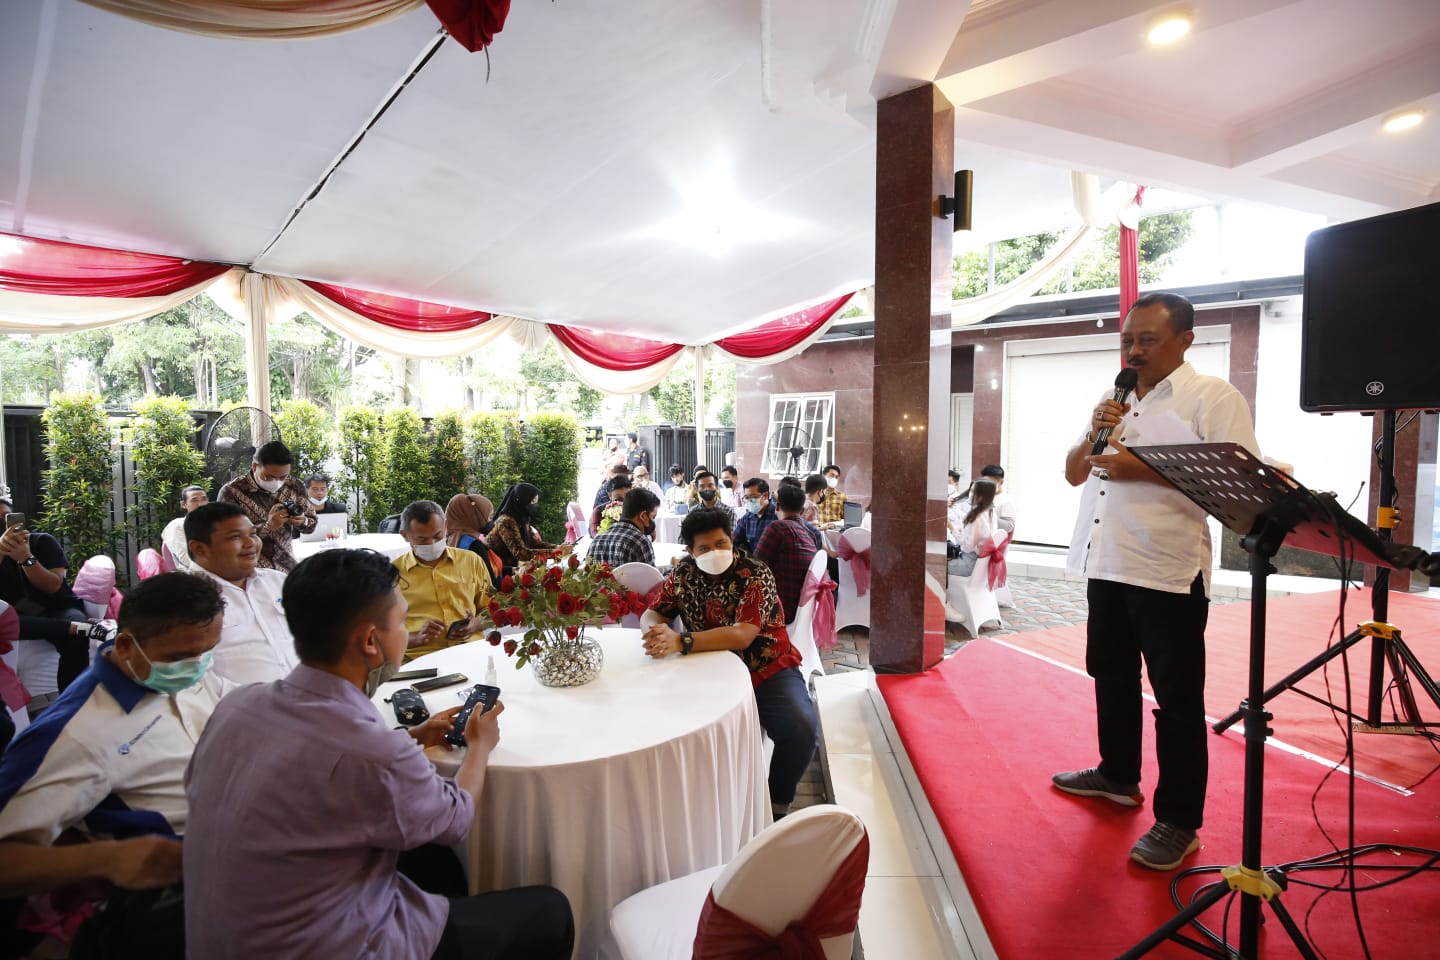 Dihadapan Influencer Kota Surabaya, Armuji Inginkan “Lompatan” Pasca Melandainya Pandemi Covid-19